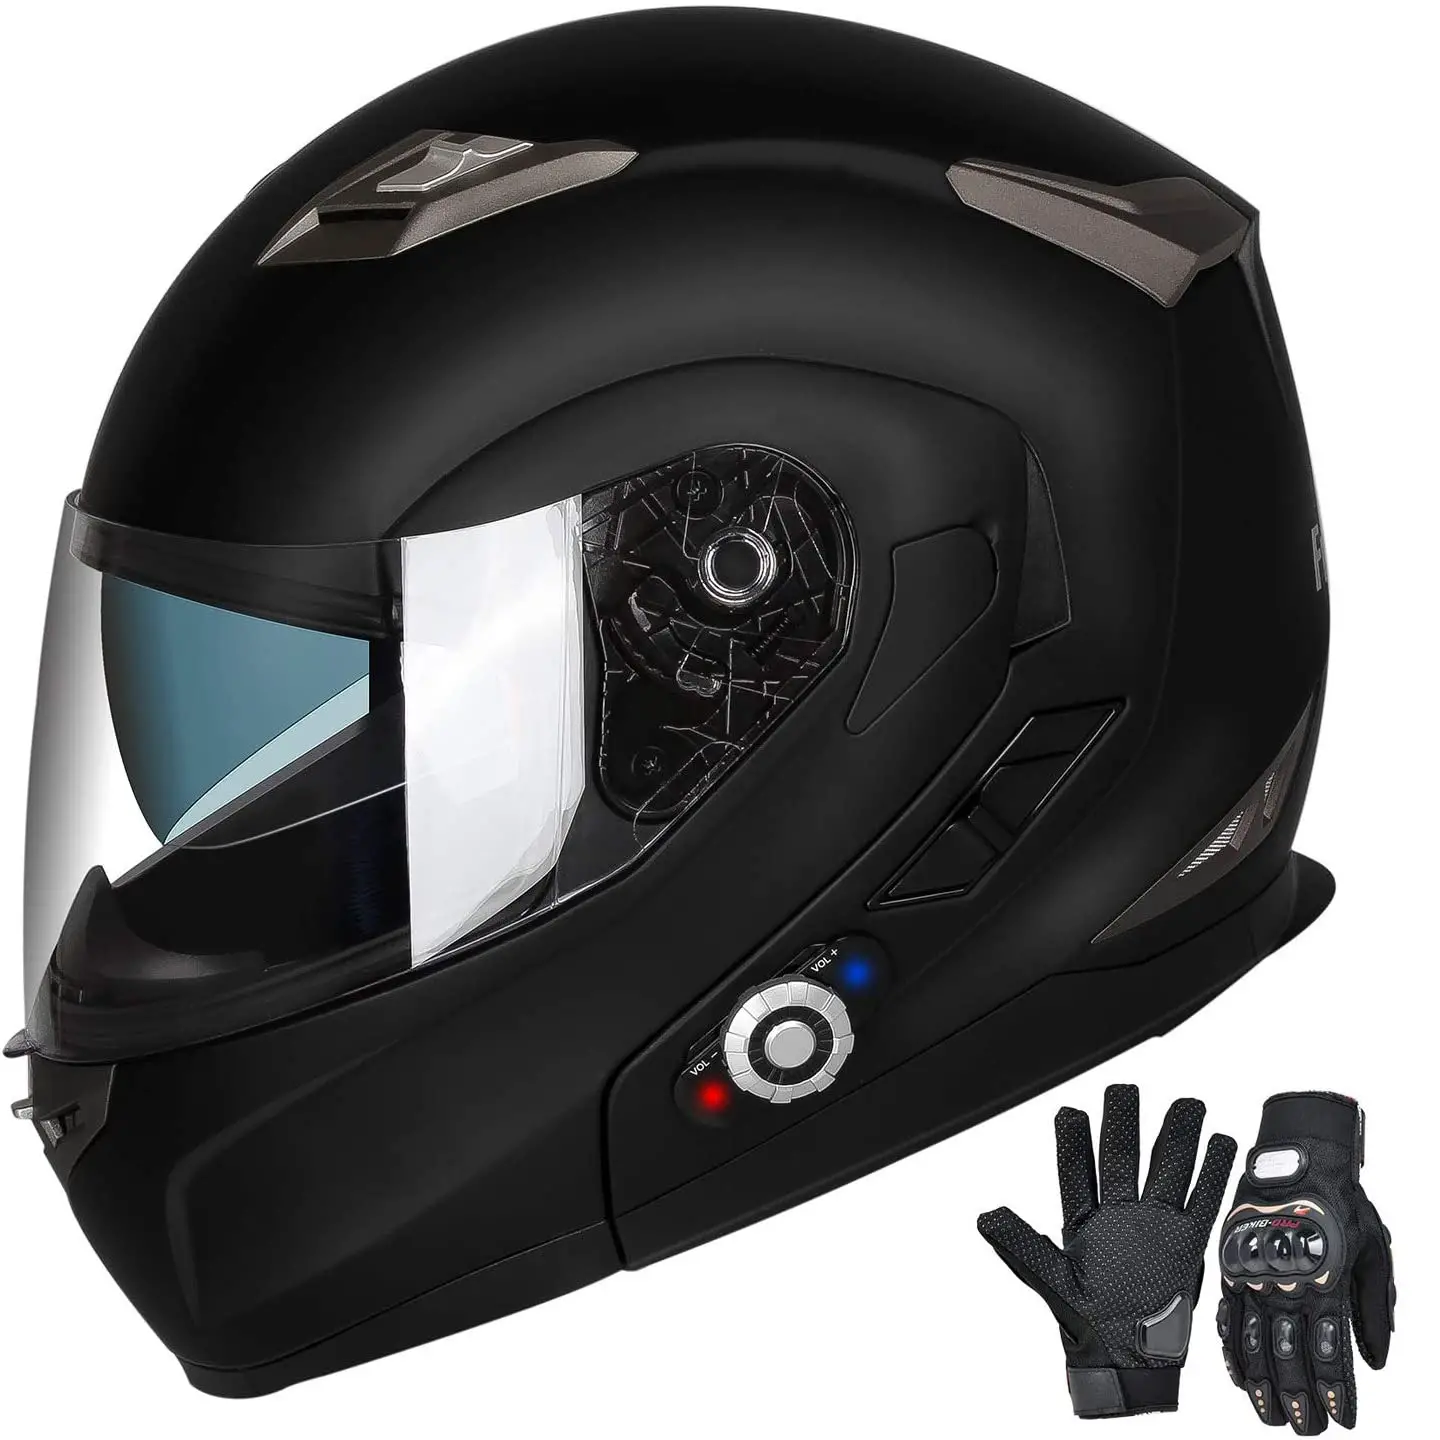 Top 5 Best Motorcycle Helmets Under $300 [2021 Review] - HelmetsGuide